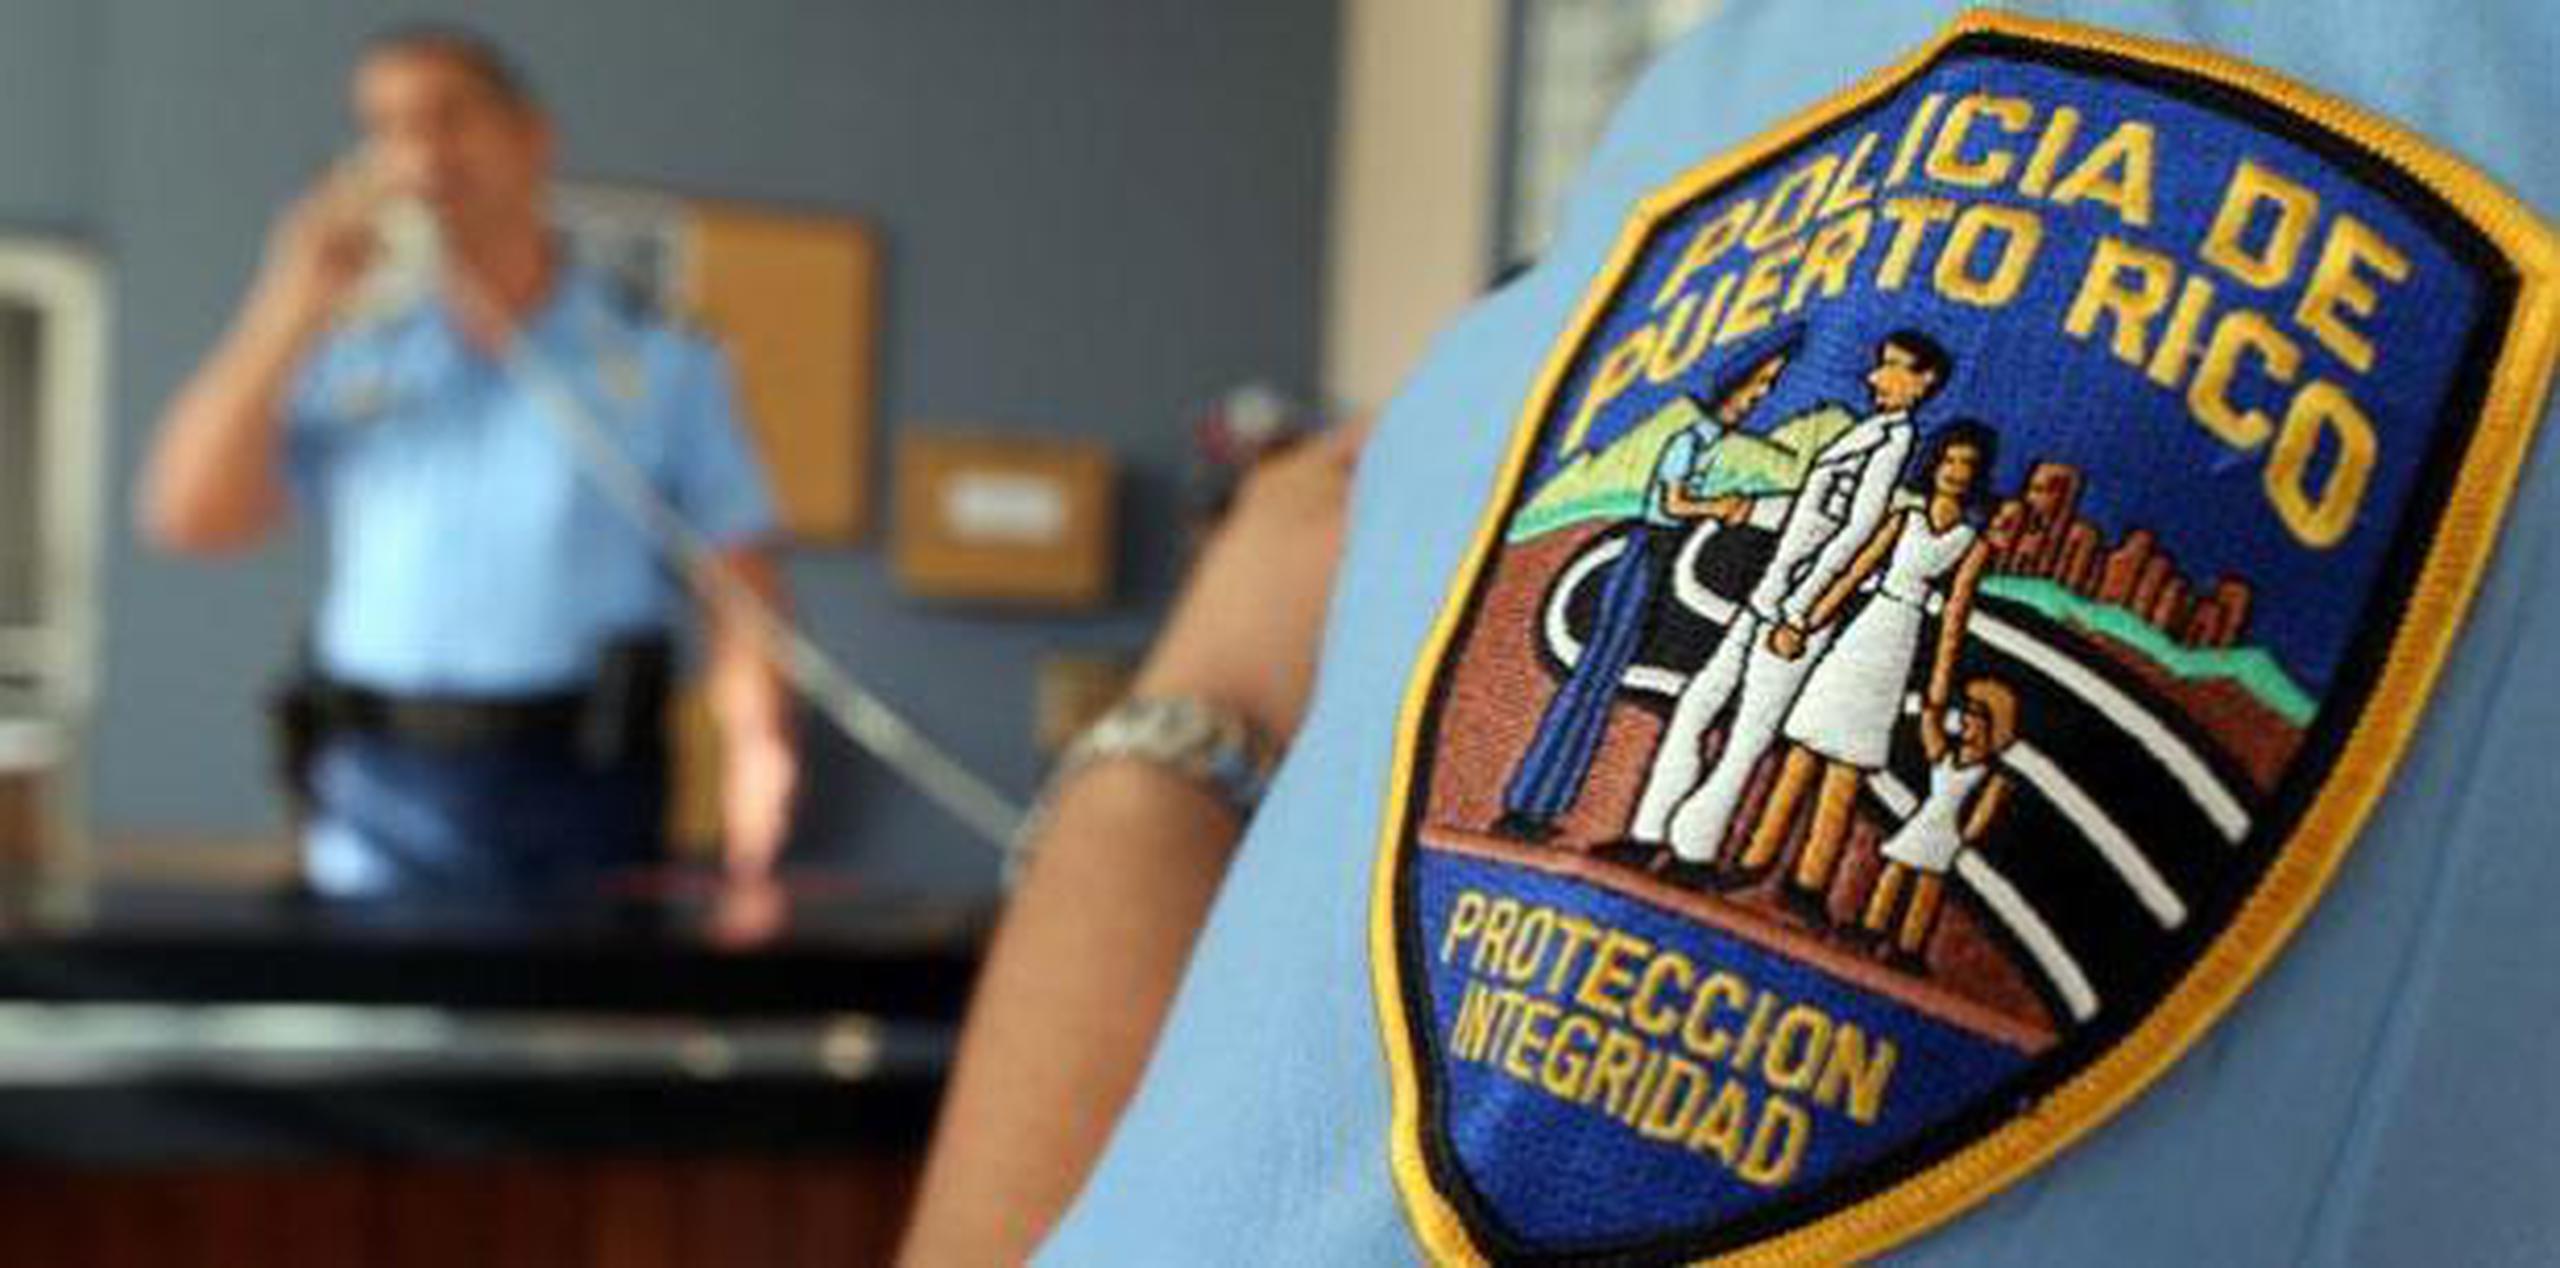 El caso será referido a la División de Agresiones del Cuerpo de Investigaciones Criminales de Vega Baja. (Archivo)